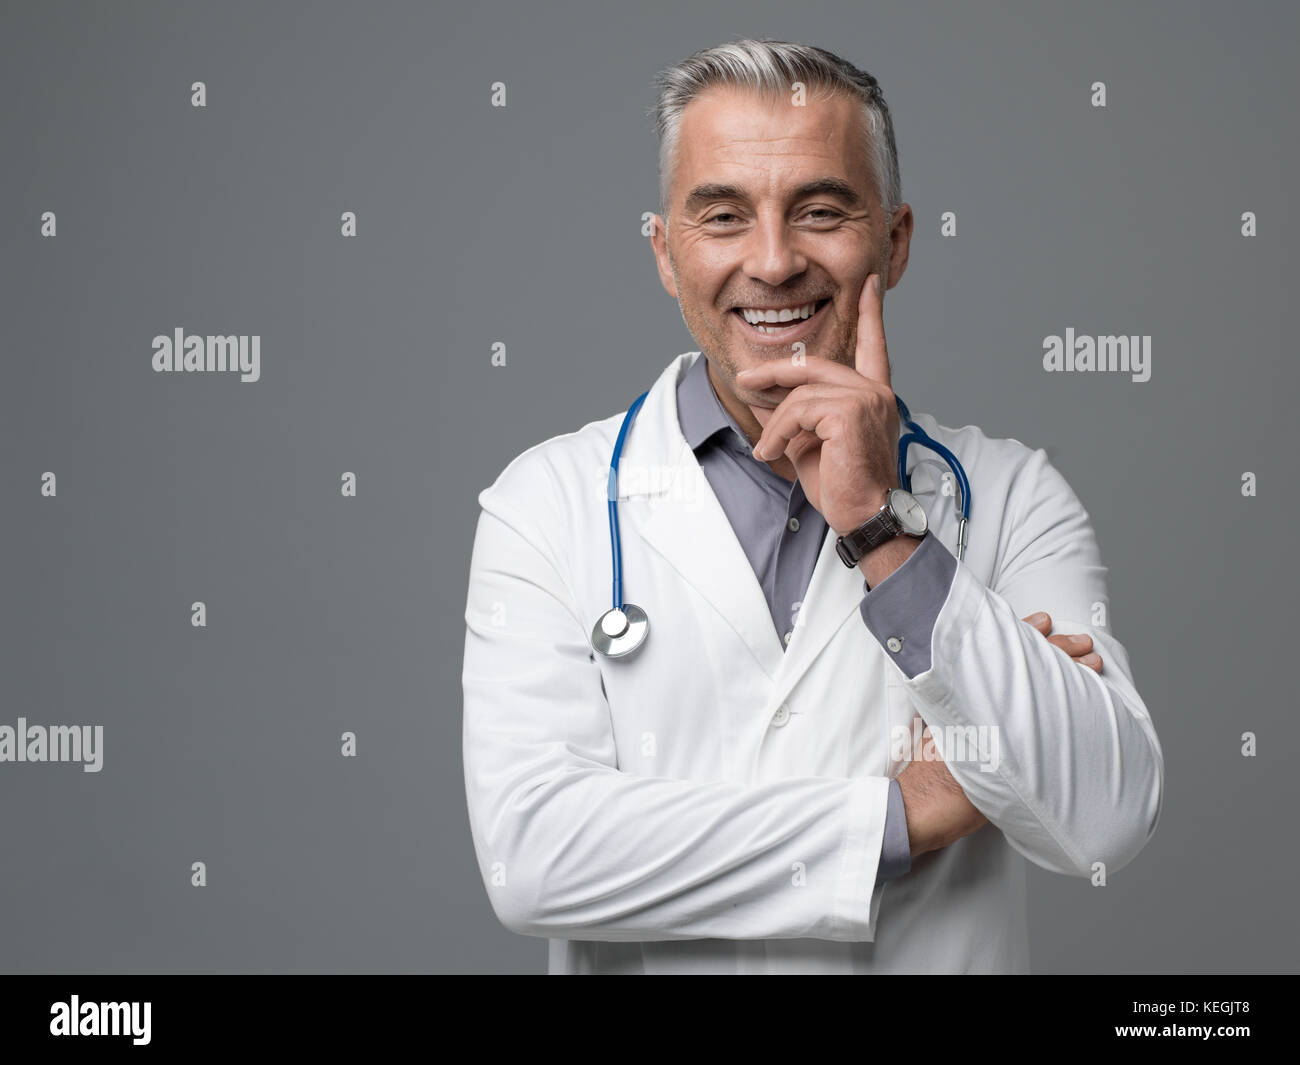 Lächelnd zuversichtlich reife Arzt auf grauem Hintergrund posiert, er blickt auf Kamera Stockfoto